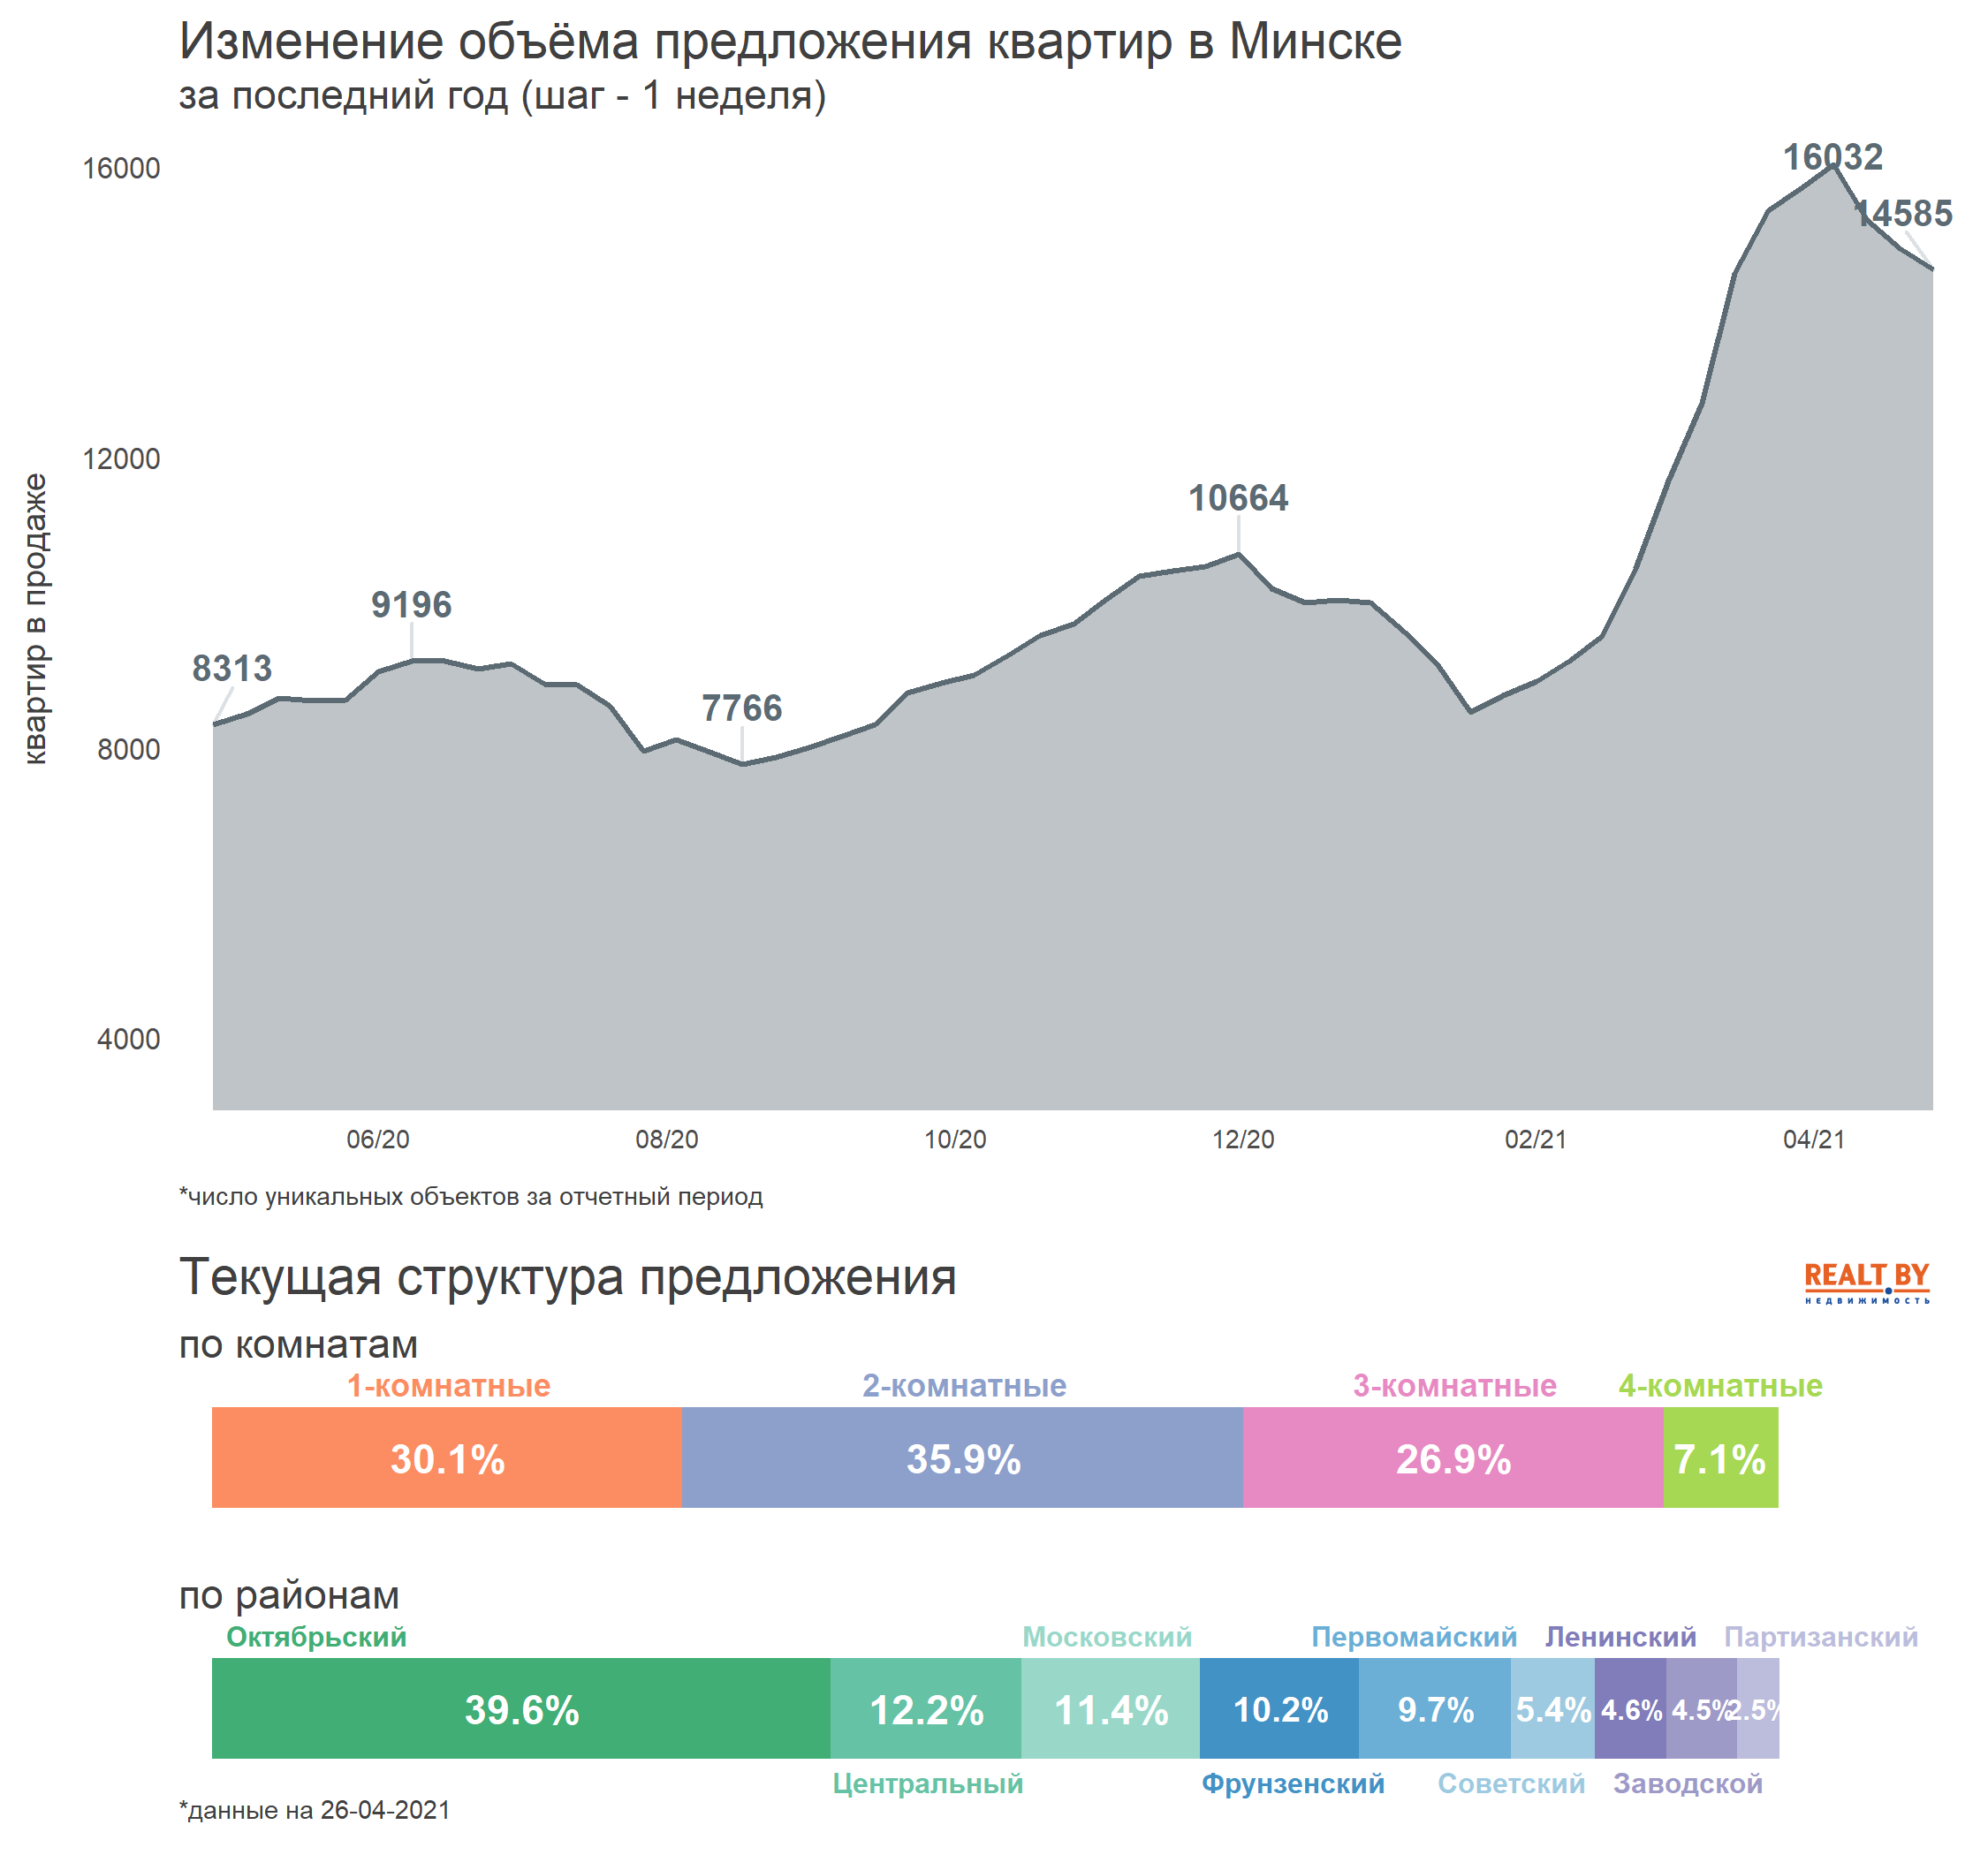 Мониторинг цен предложения квартир в Минске за 19-26 апреля 2021 года